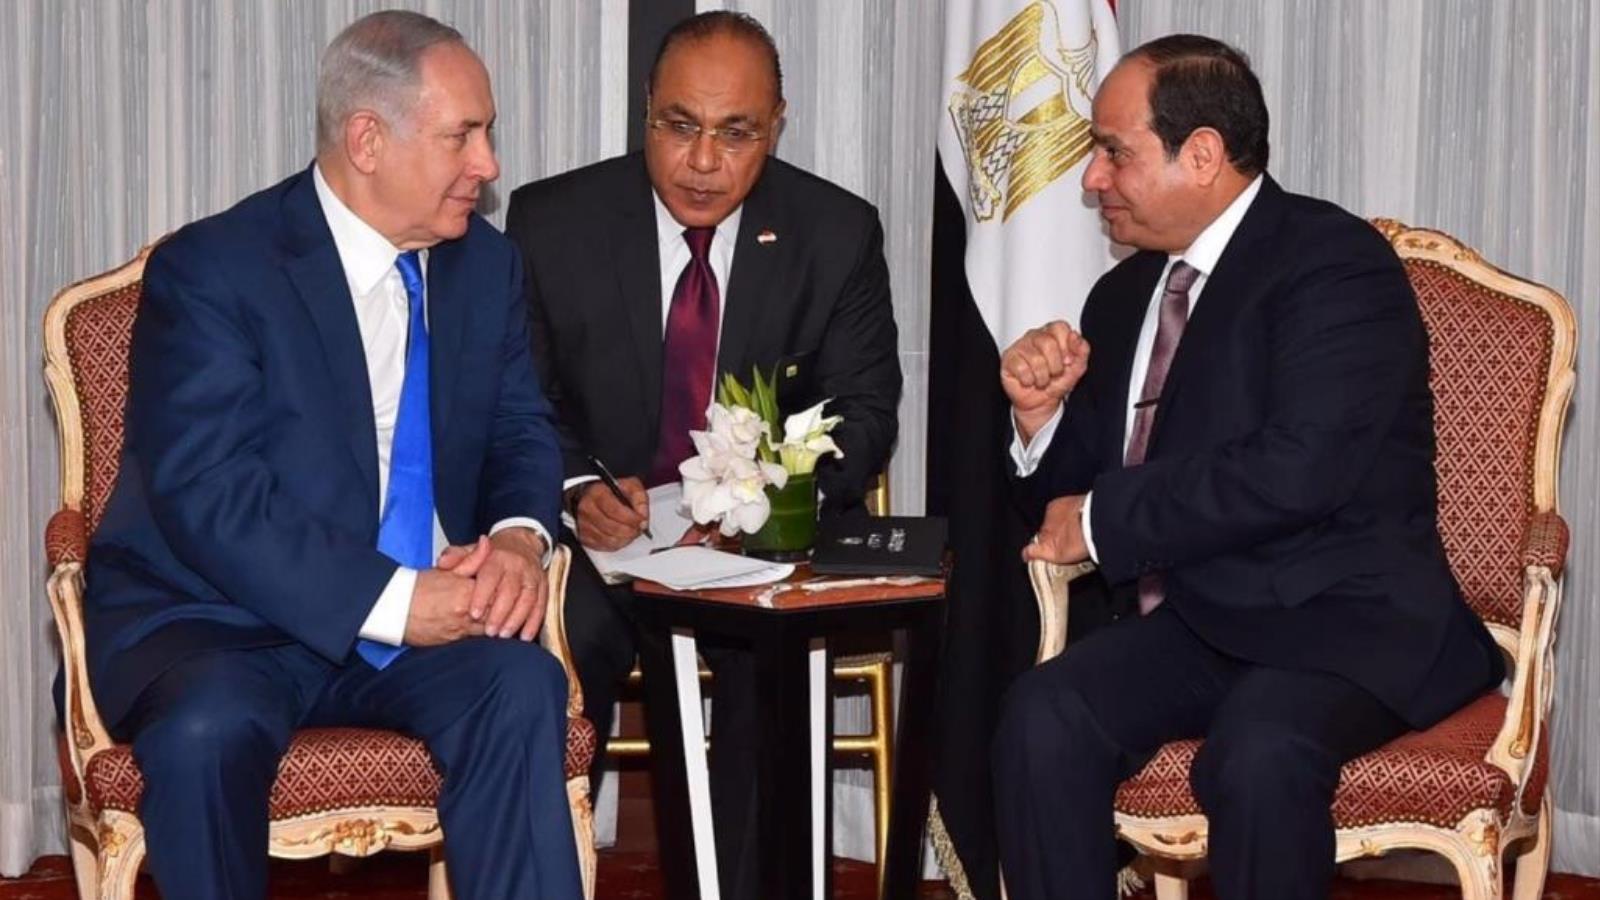 العلاقات المصرية الإسرائيلية تشهد تطورا إيجابيا منذ الانقلاب العسكري في يوليو/تموز 2013 (رويترز) 